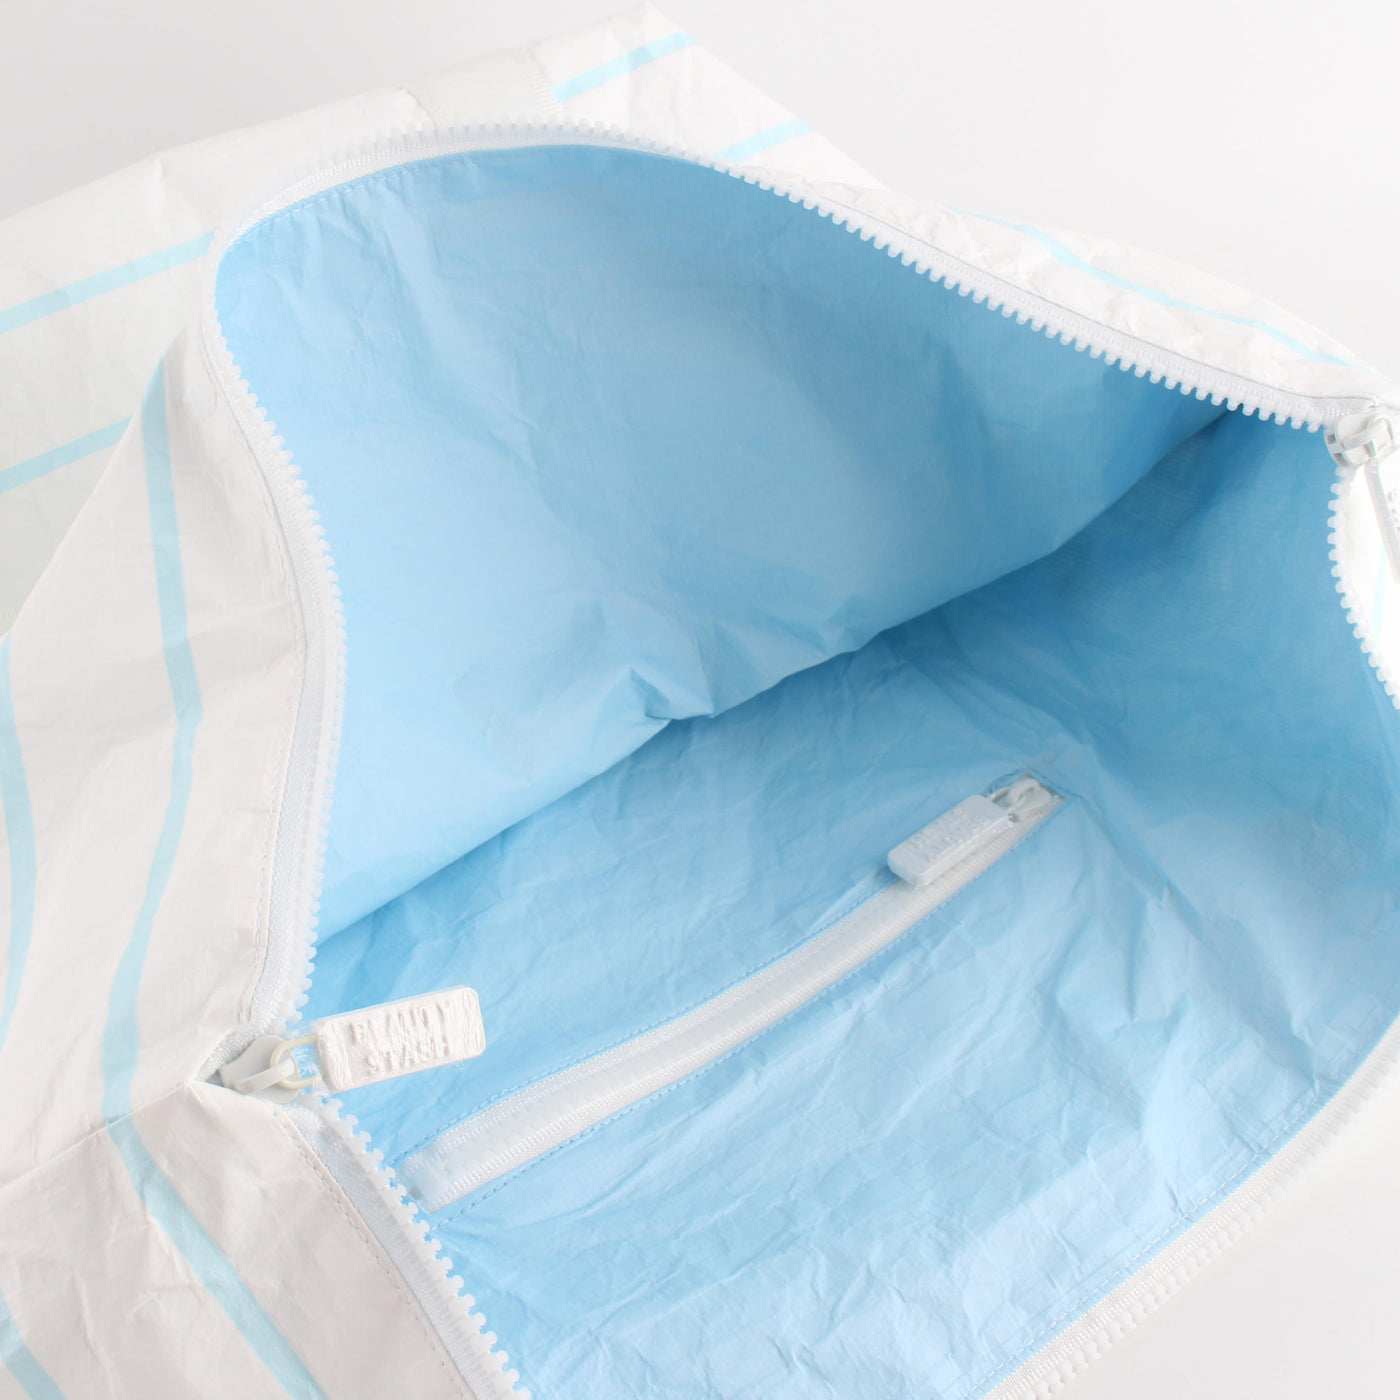 Water Resistant Bags